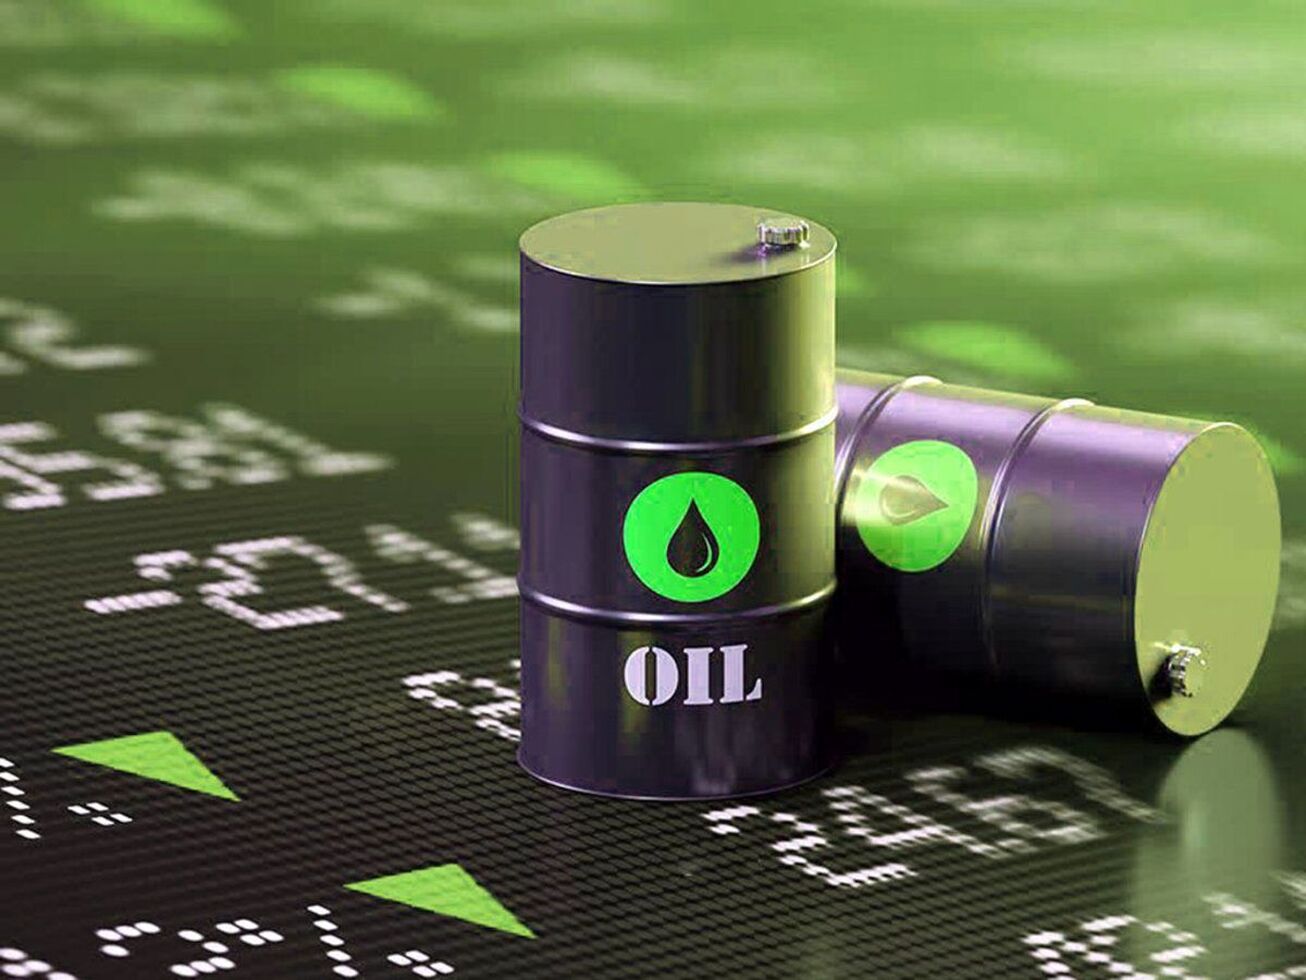 نفت آمریکا به ۸۰ دلار سقوط کرد